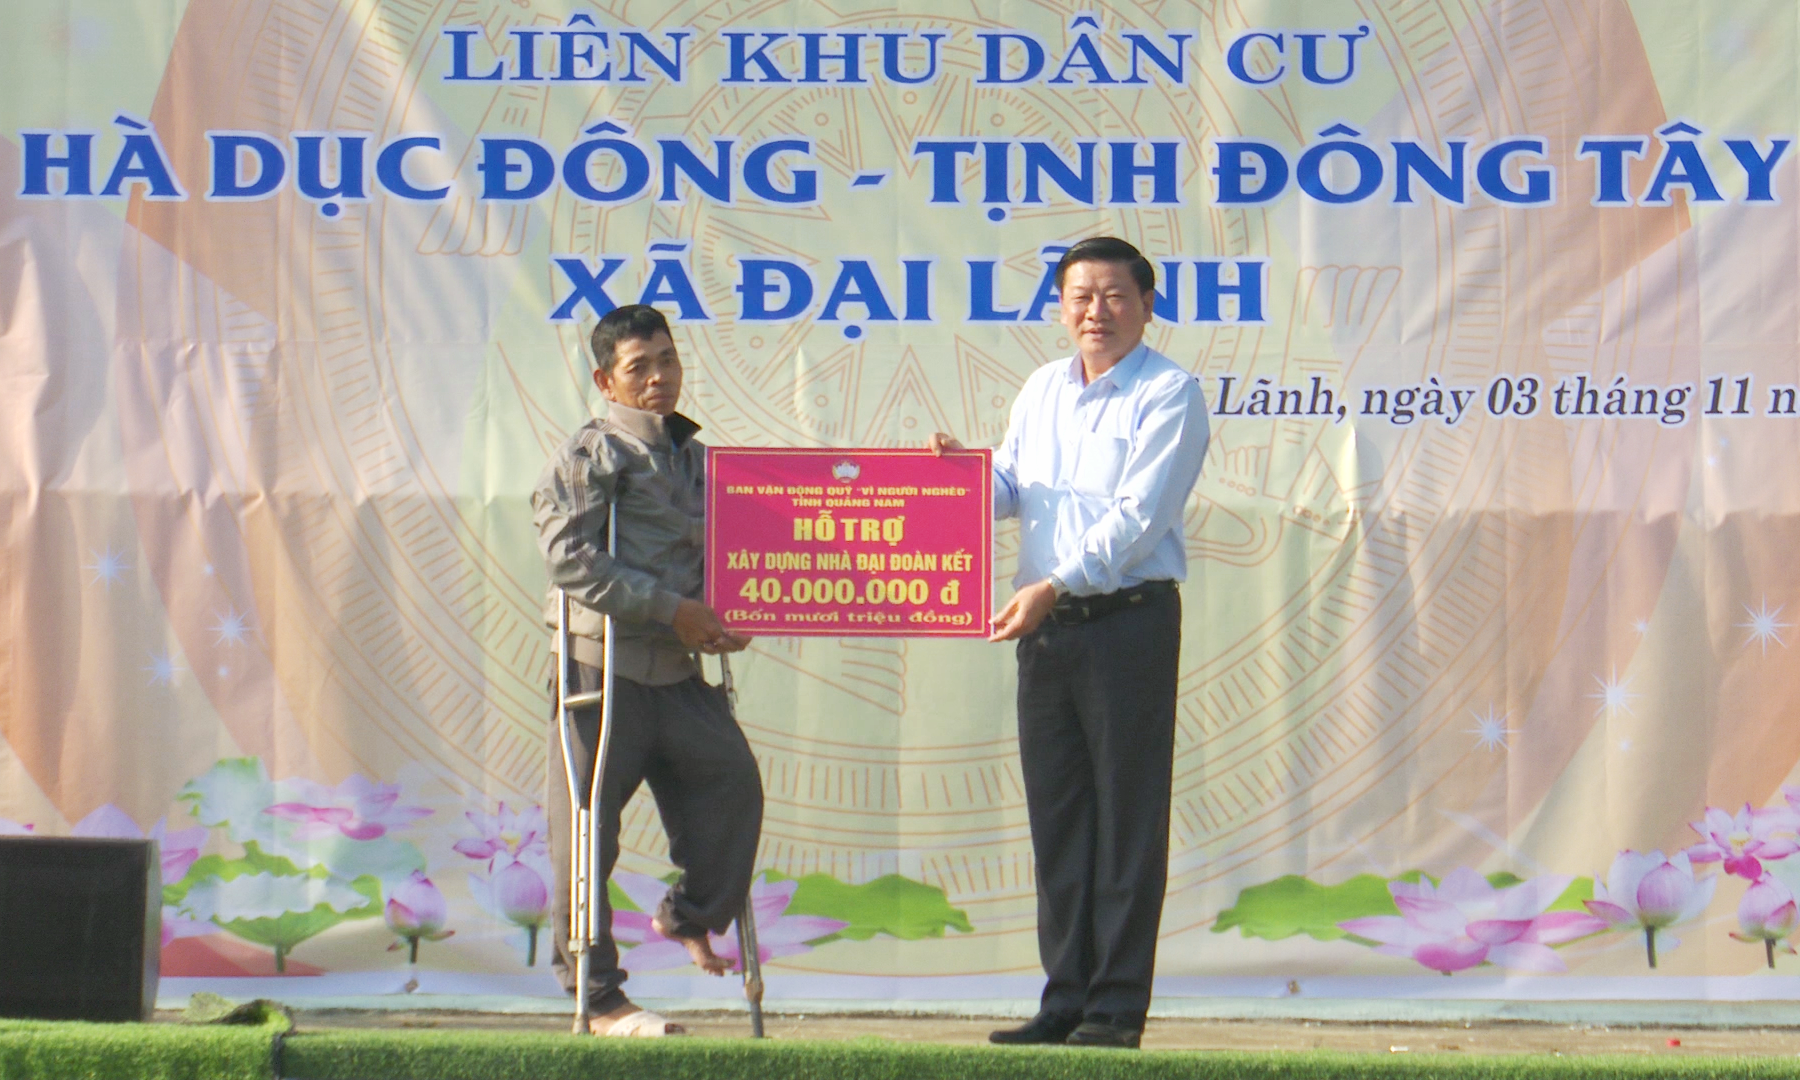 Đồng chí Phan Thái Bình - Phó Chủ tịch Ủy ban MTTQ Việt Nam tỉnh trao nhà đại đoàn kết cho người dân tại Đại Lãnh. Ảnh: N.D